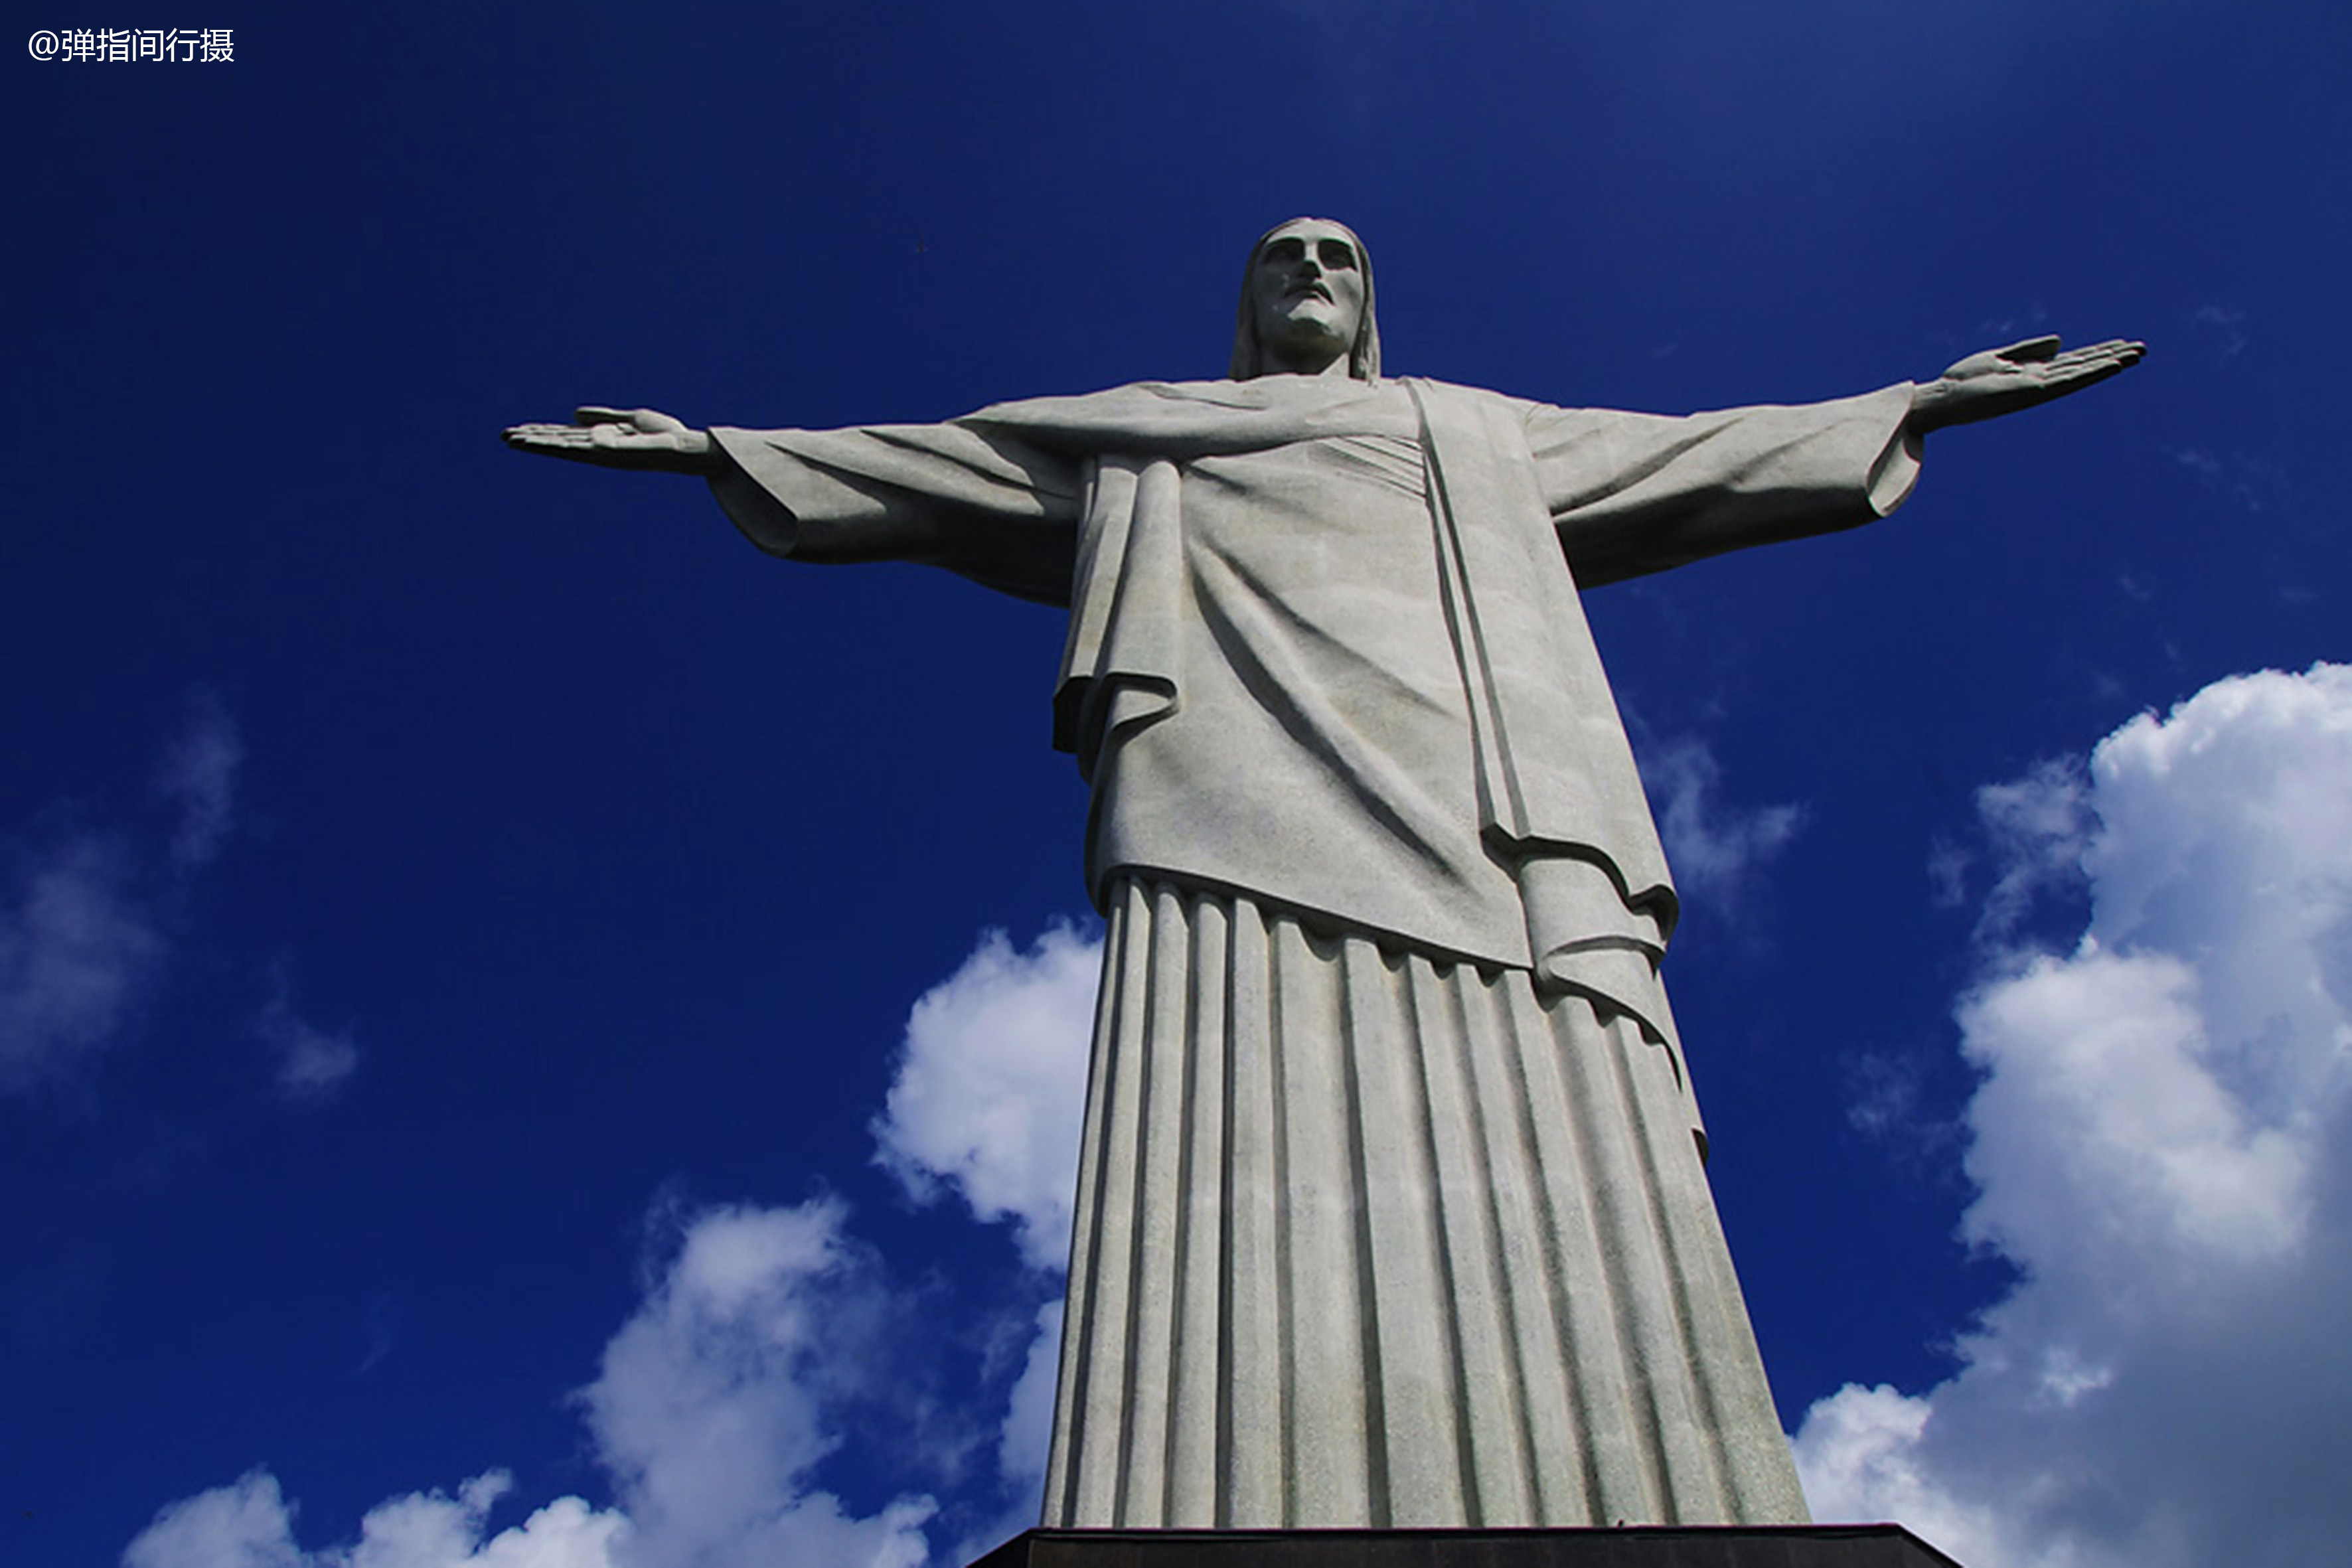 世界上最大的耶稣像,用1200吨石头雕成,高达40米,屹立高山之巅